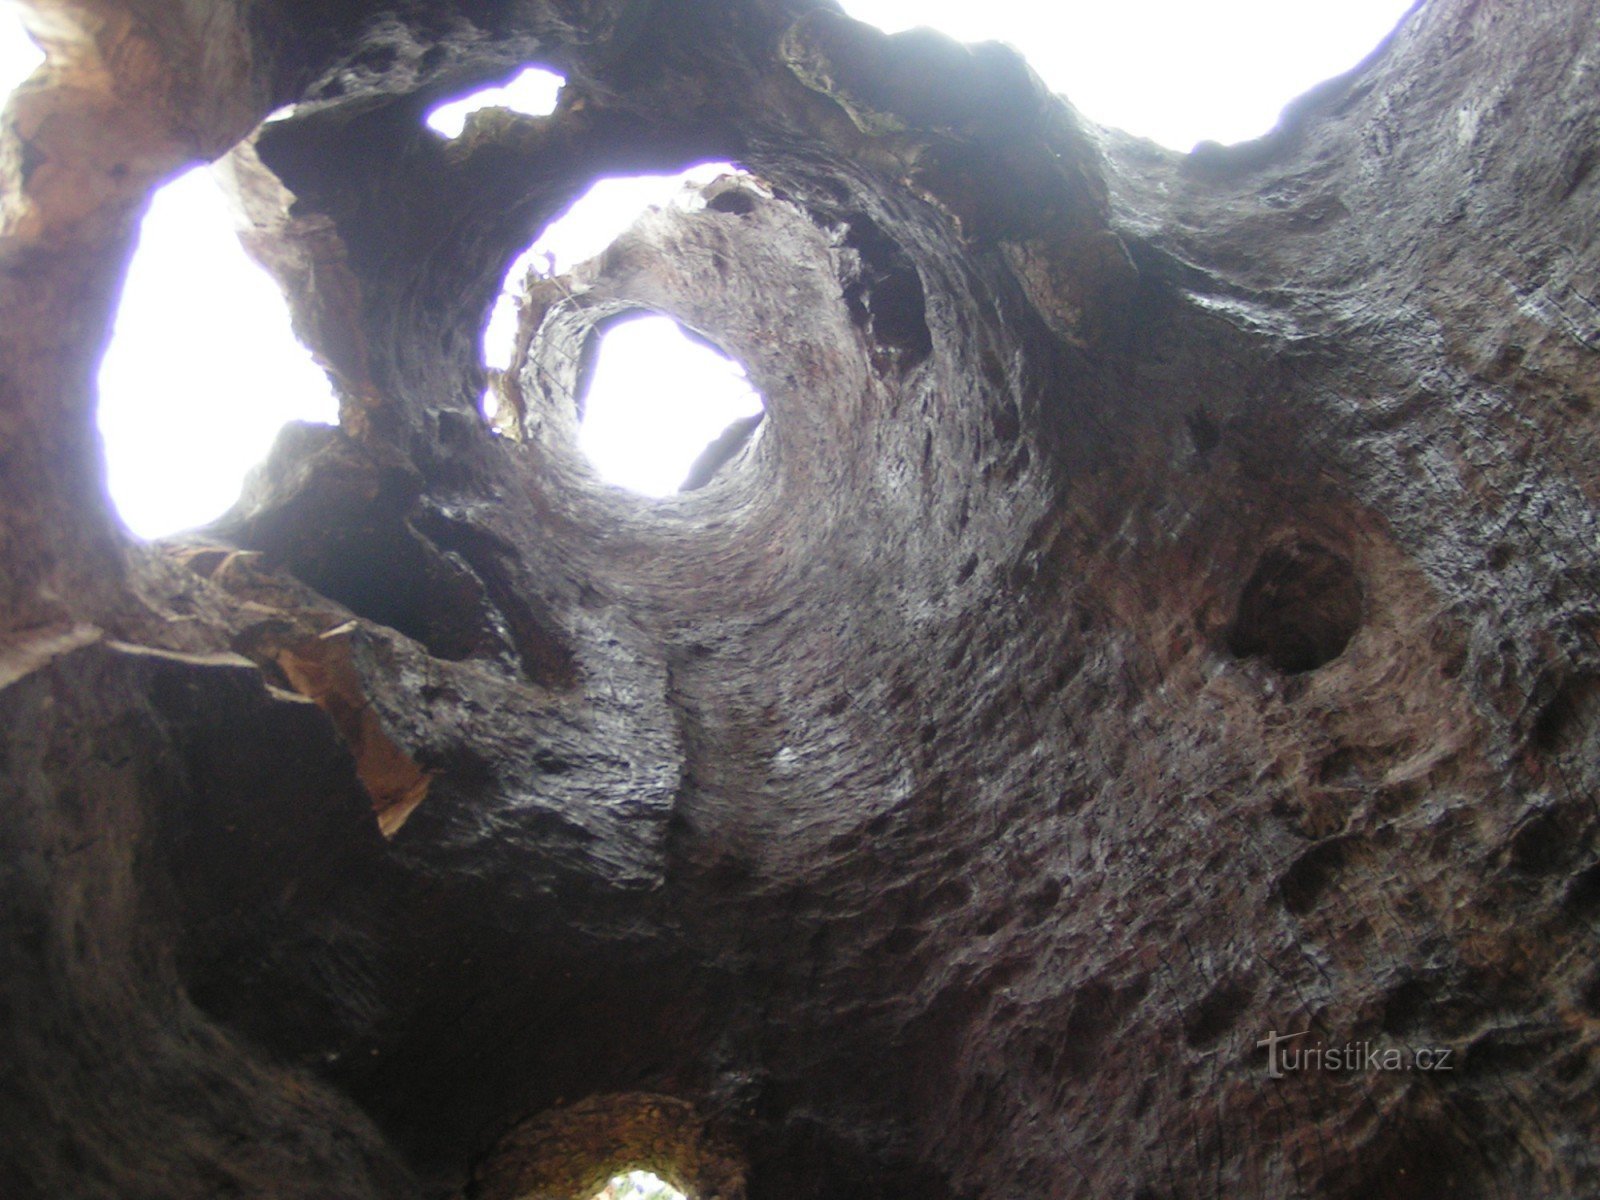 Ver através do tronco oco de uma árvore de bordo